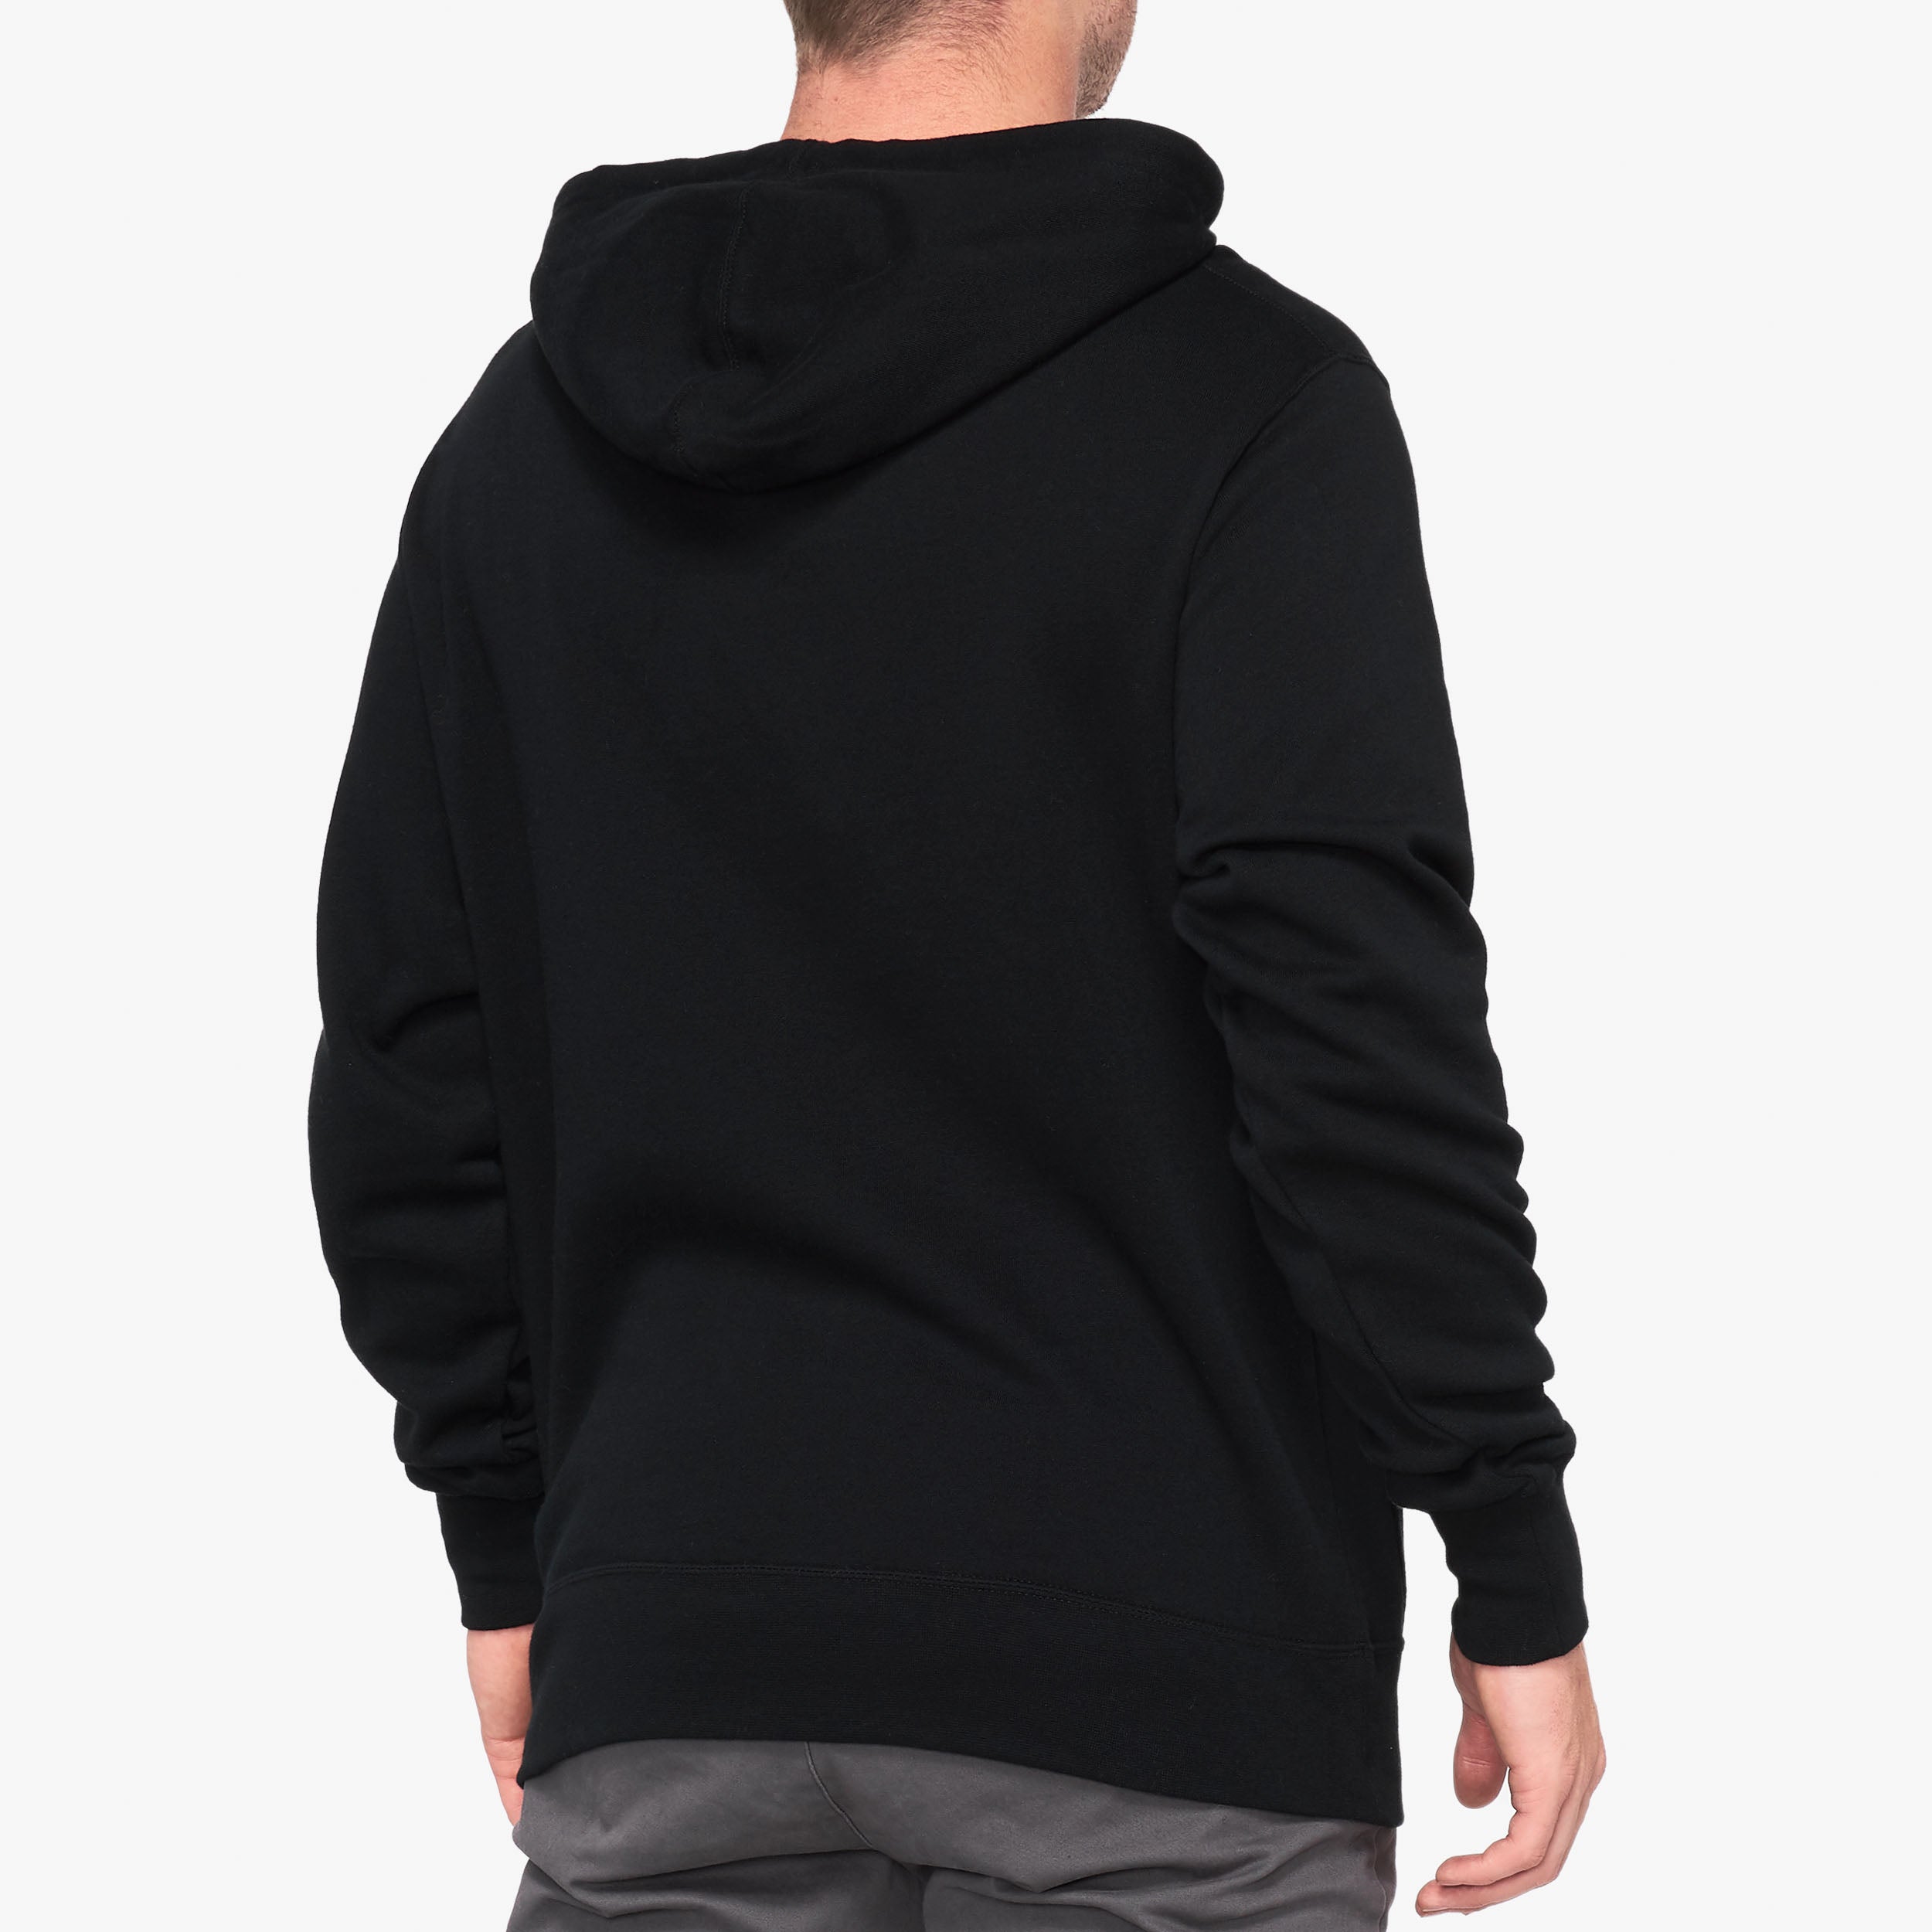 ESSENTIAL Hooded Sweatshirt - Black